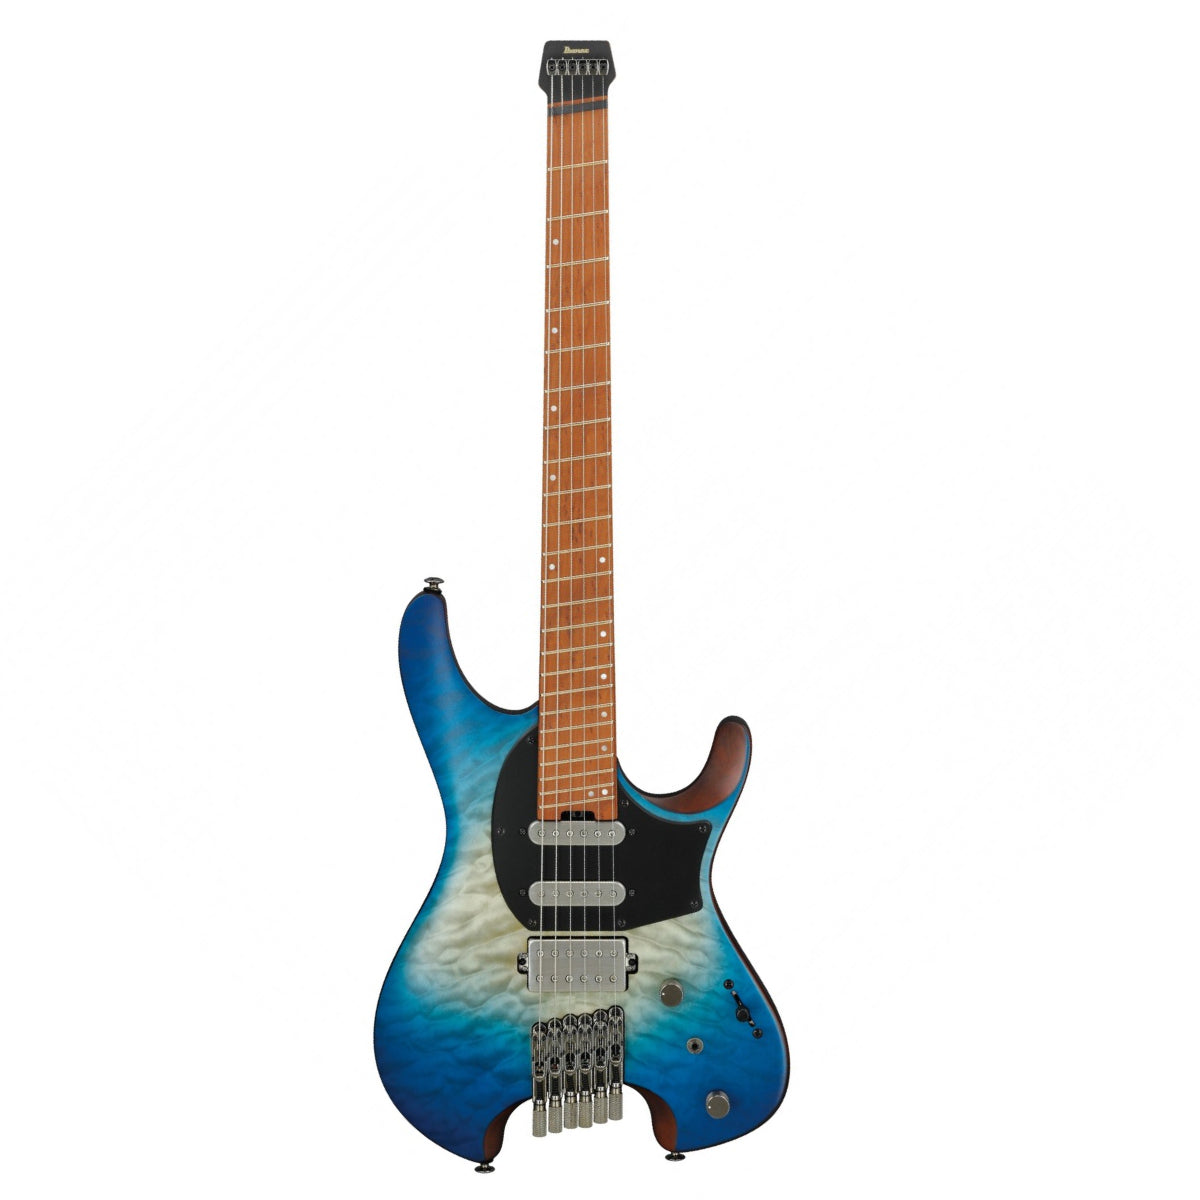 Đàn Guitar Điện Ibanez Standard QX54QM w/Bag, Blue Sphere Burst Matte-Mai Nguyên Music